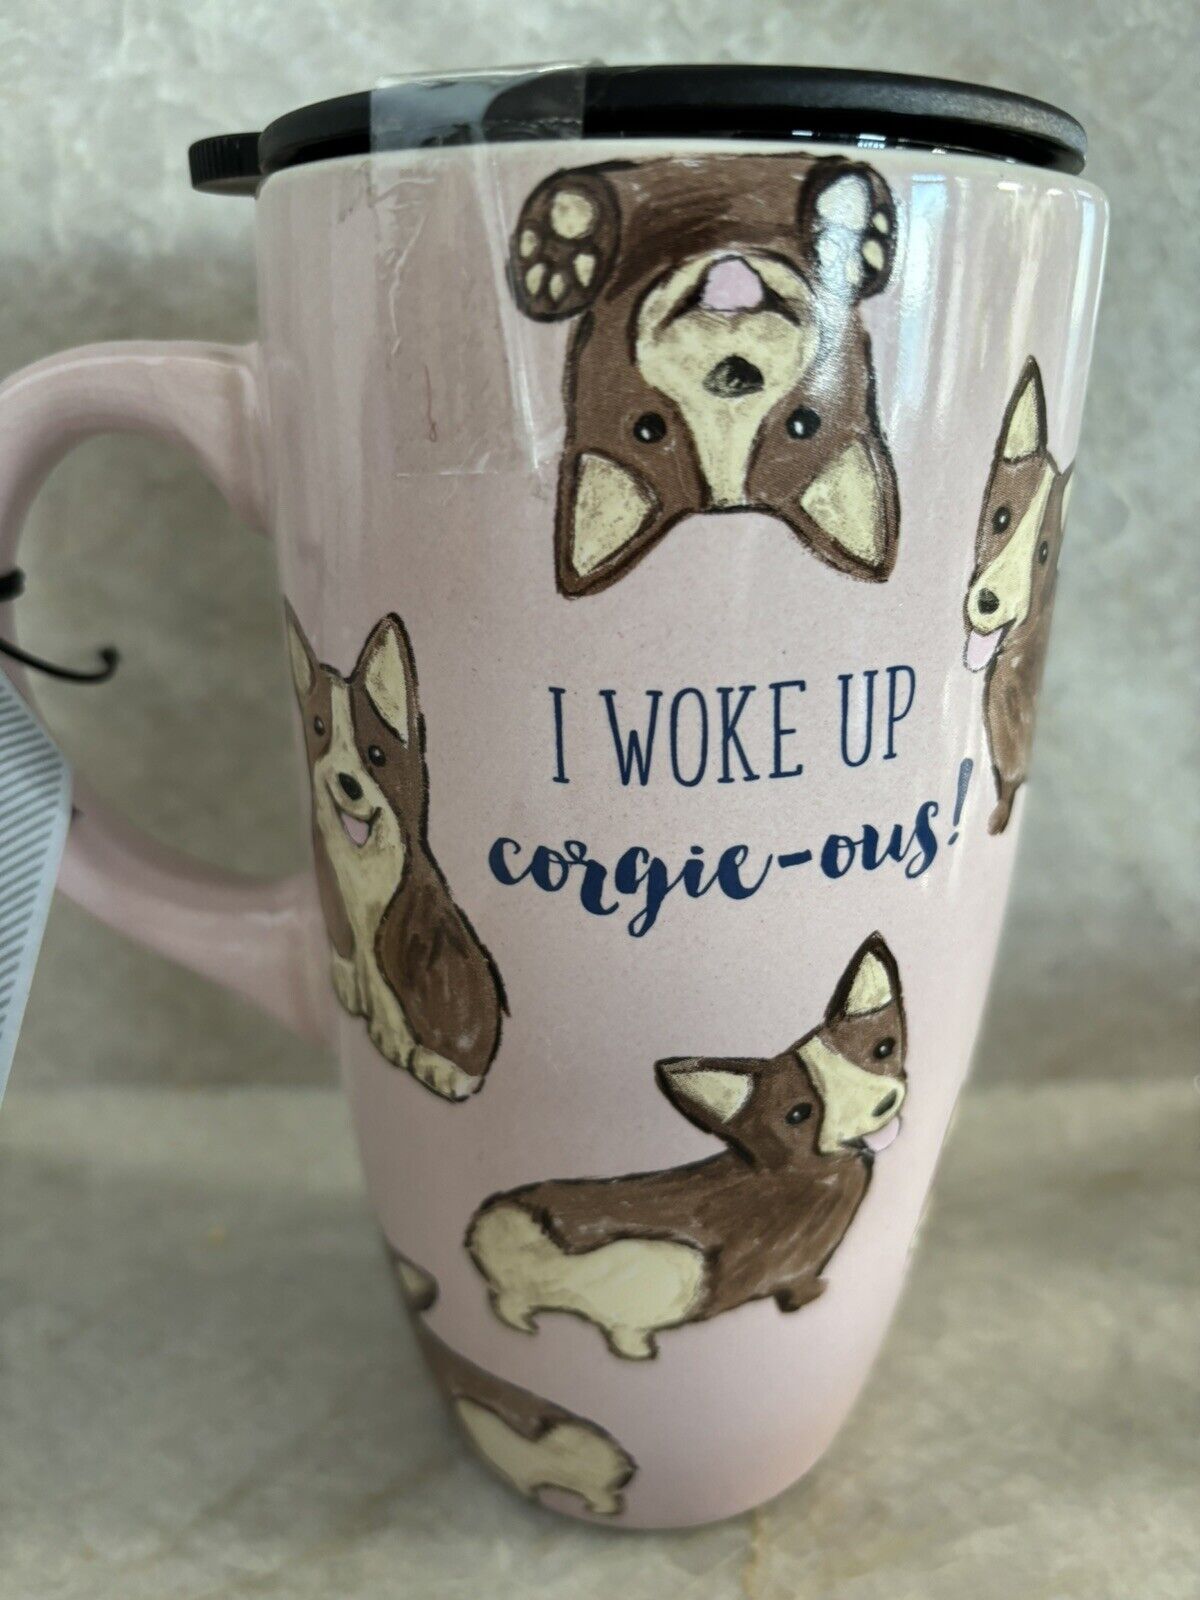 Corgi Dog Tall Pink Ceramic Mug - I Woke Up Corgie-ous Lid  Sheffield Home NWT